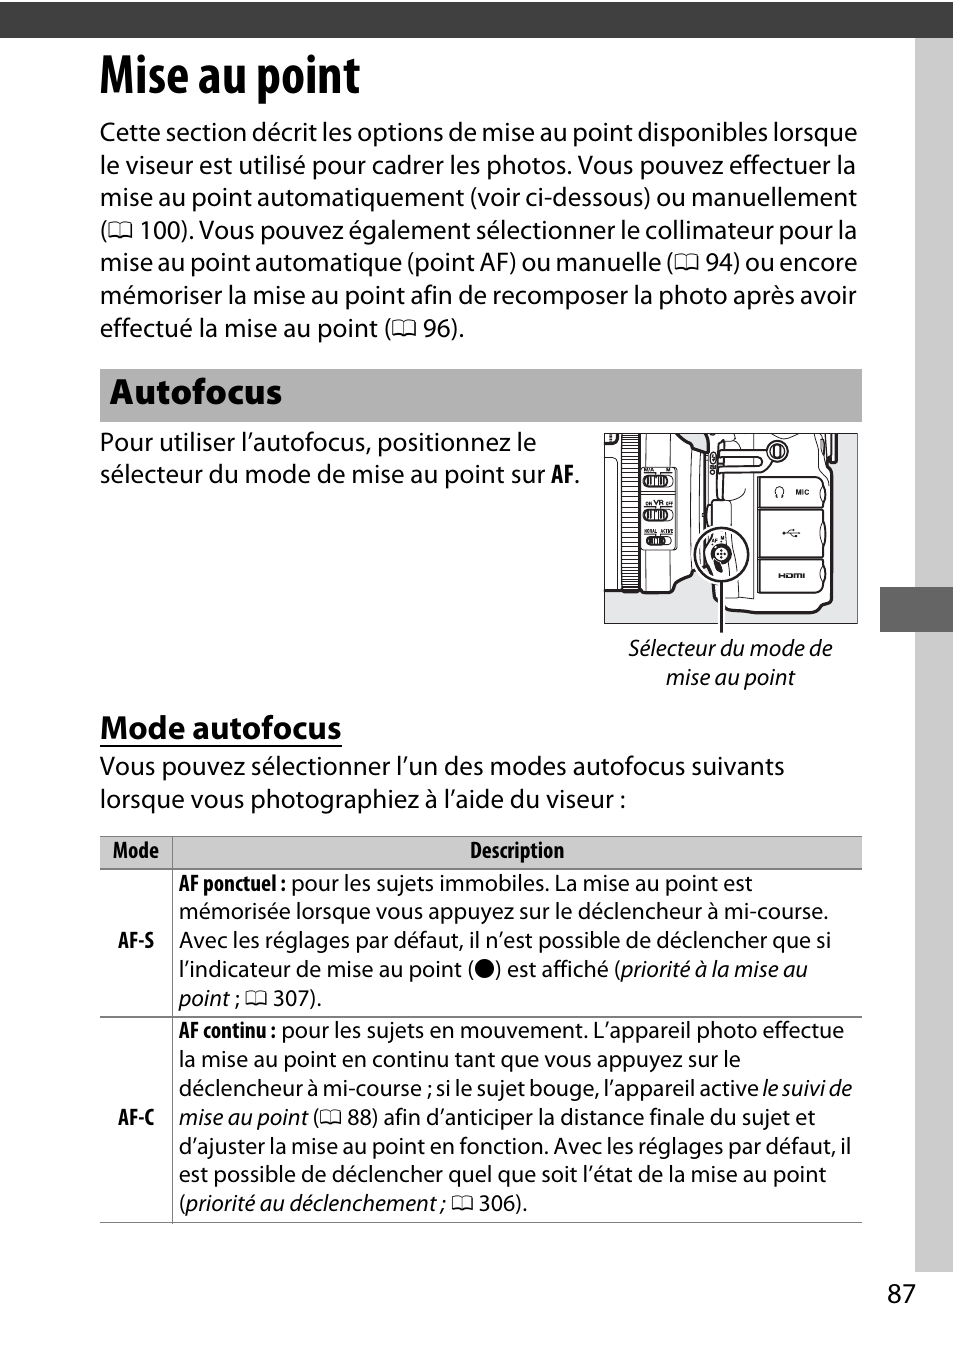 Mise au point, Autofocus, Mode autofocus | Nikon D810 Manuel d'utilisation | Page 111 / 530